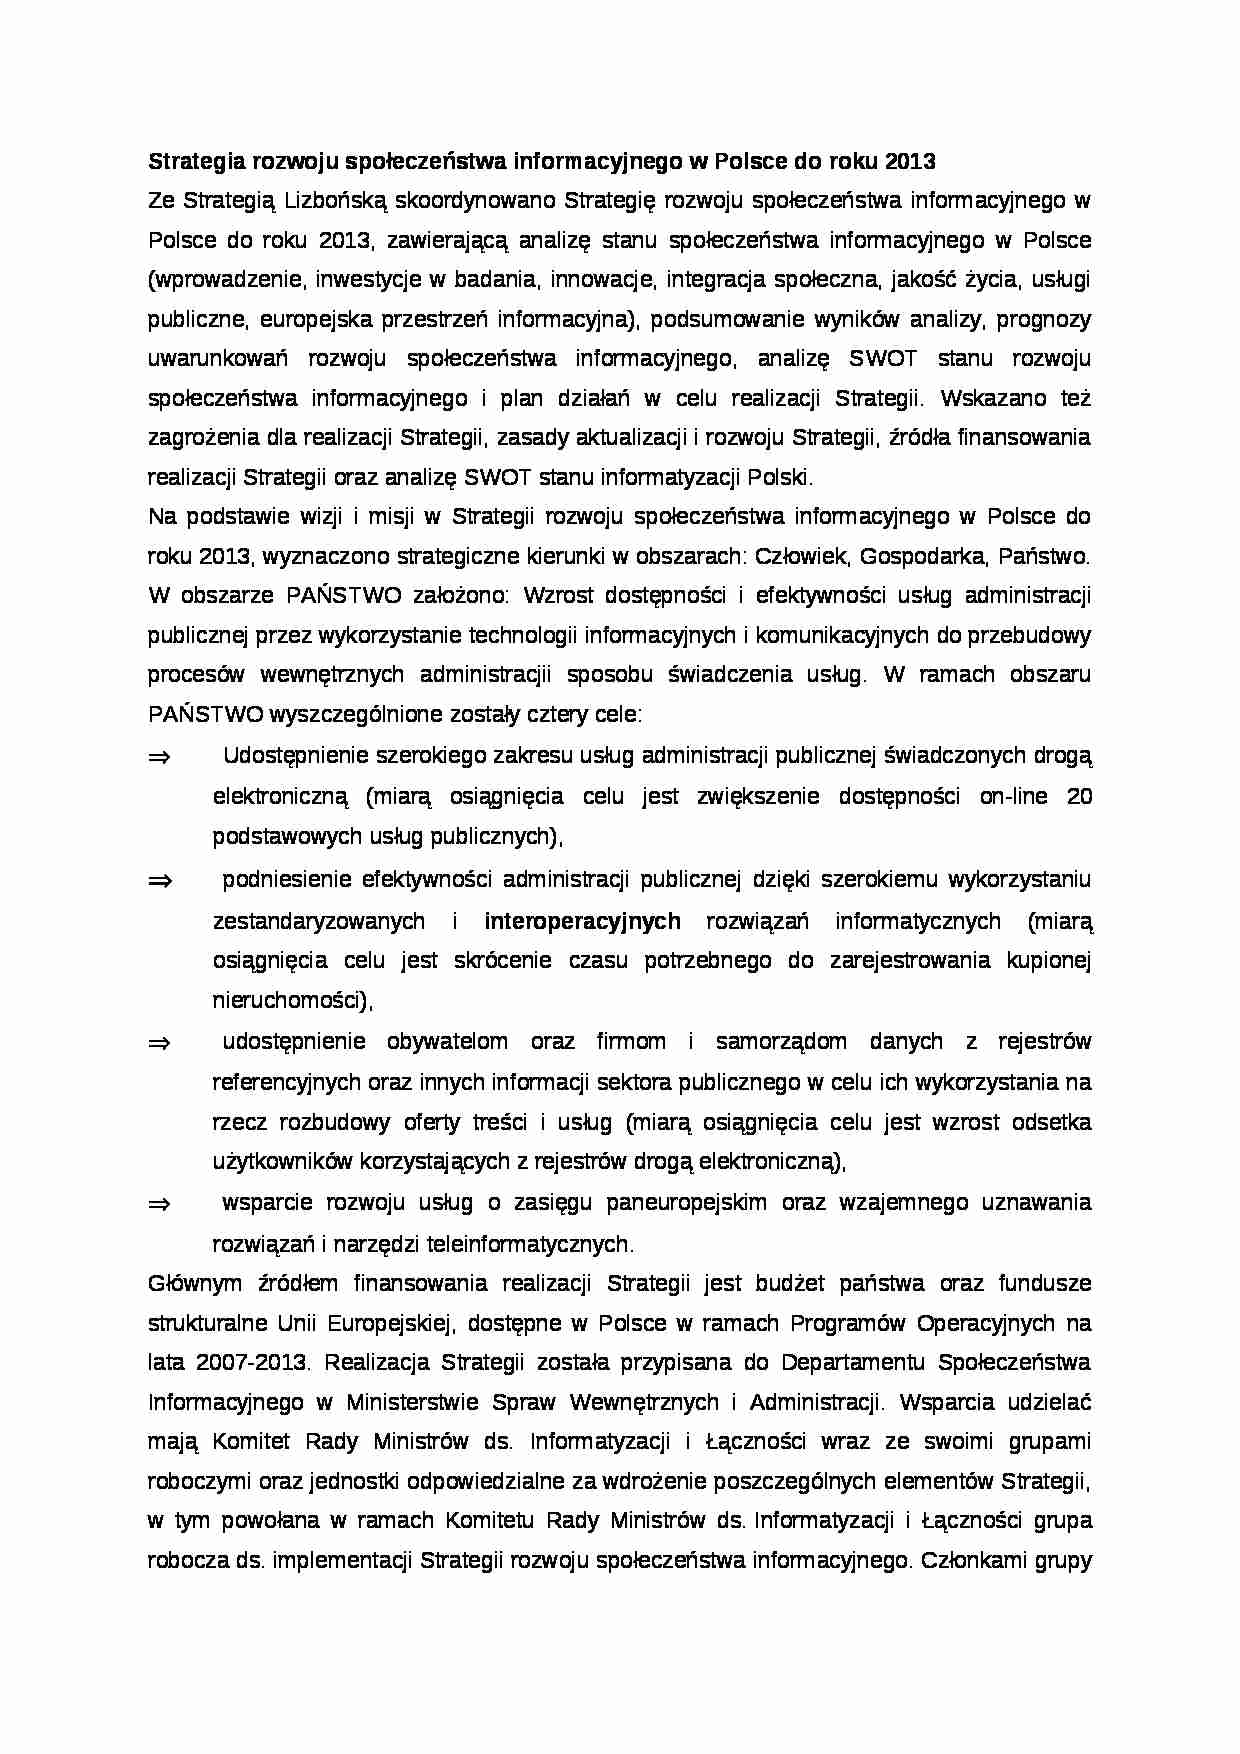 Strategia rozwoju społeczeństwa informacyjnego w Polsce - strona 1